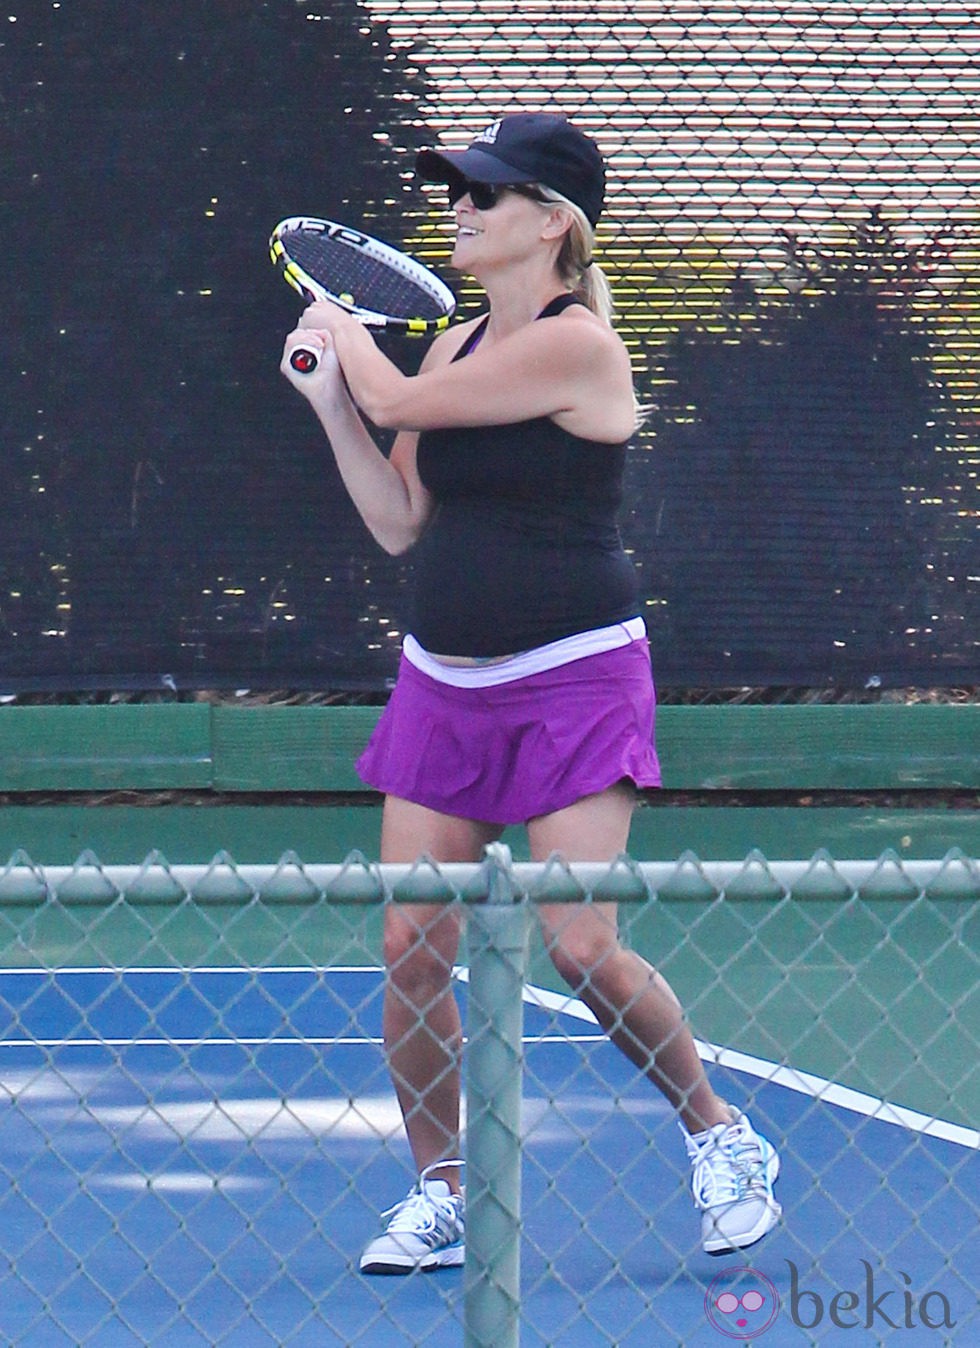 Reese Witherspoon practica tenis embarazada por tercera vez